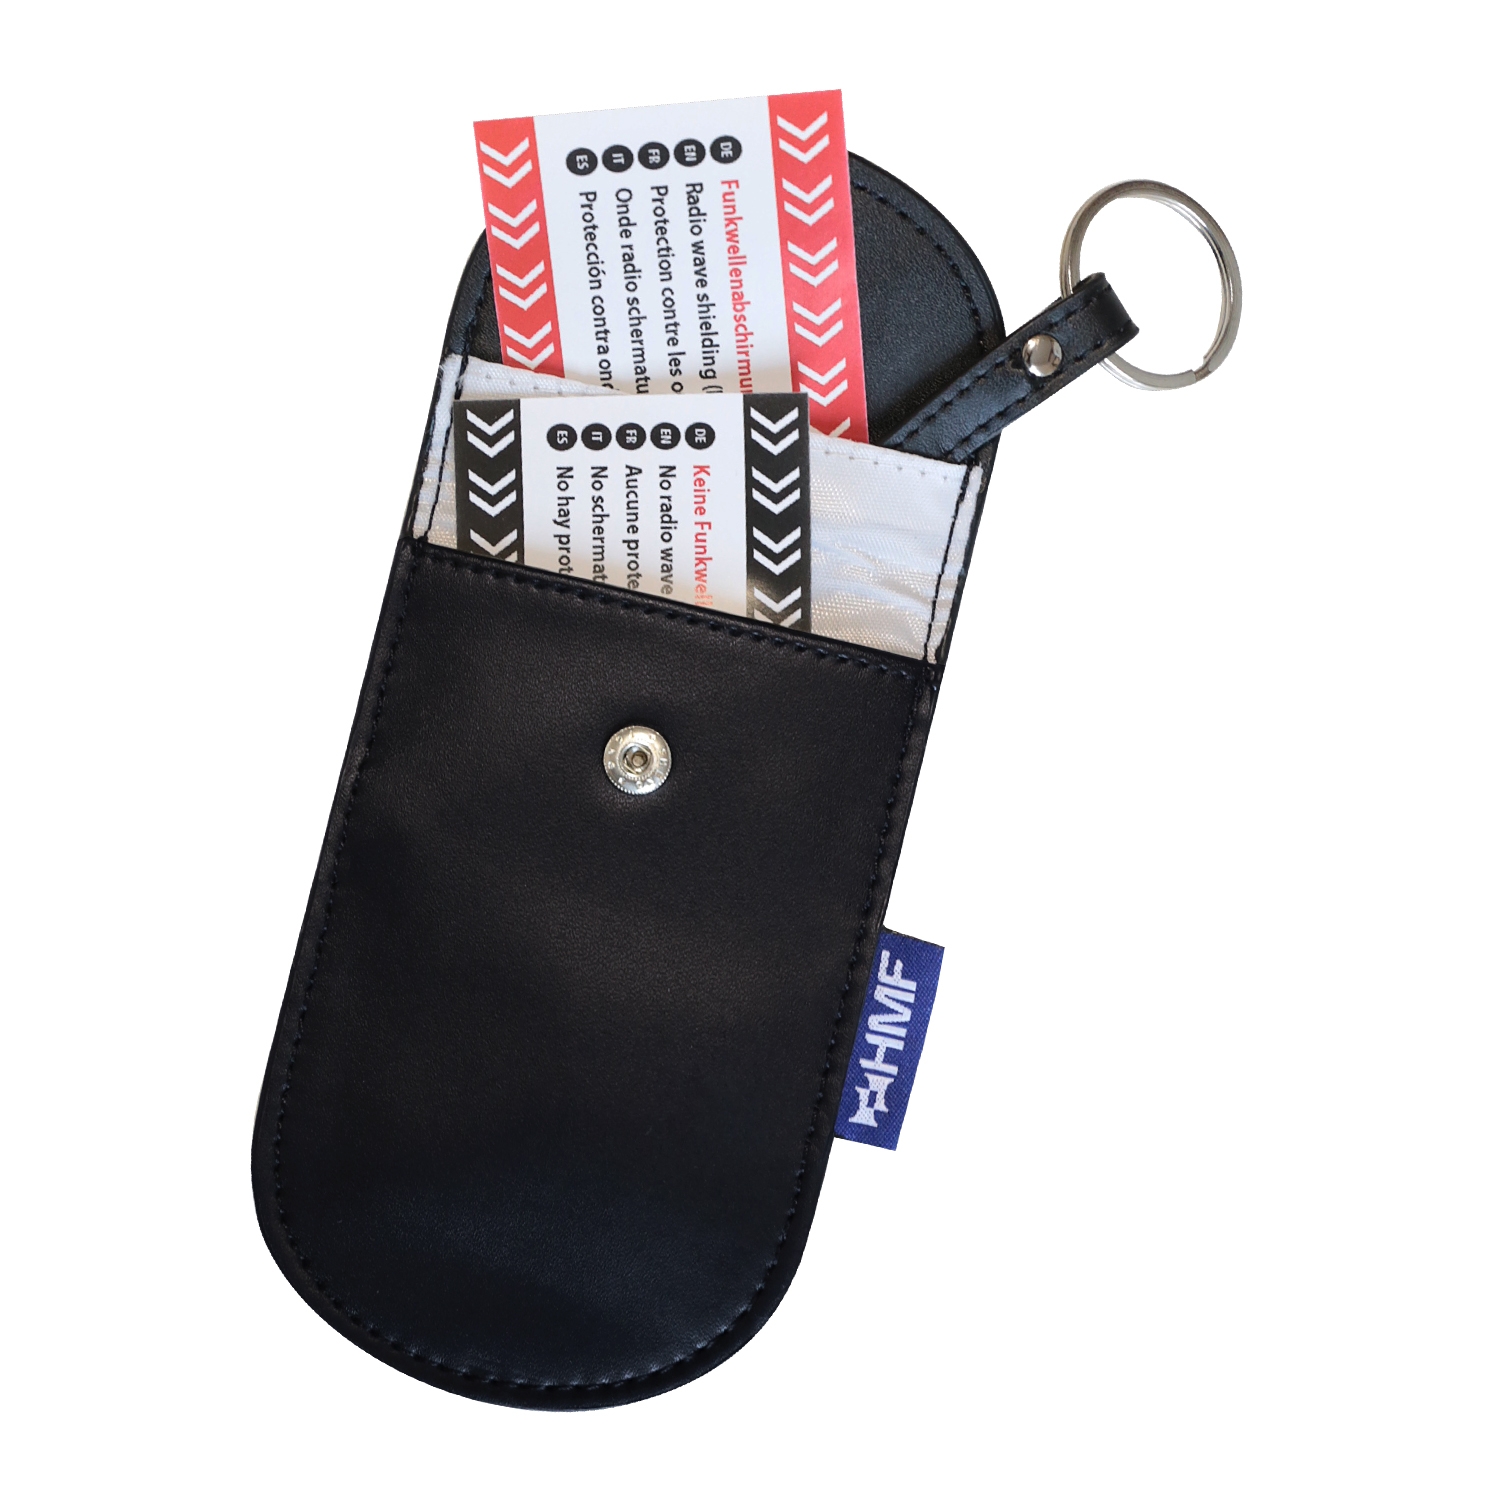 AutoSchlüssel Schutz Schlüssellose Abdeckung 2 Pack Abschirmung